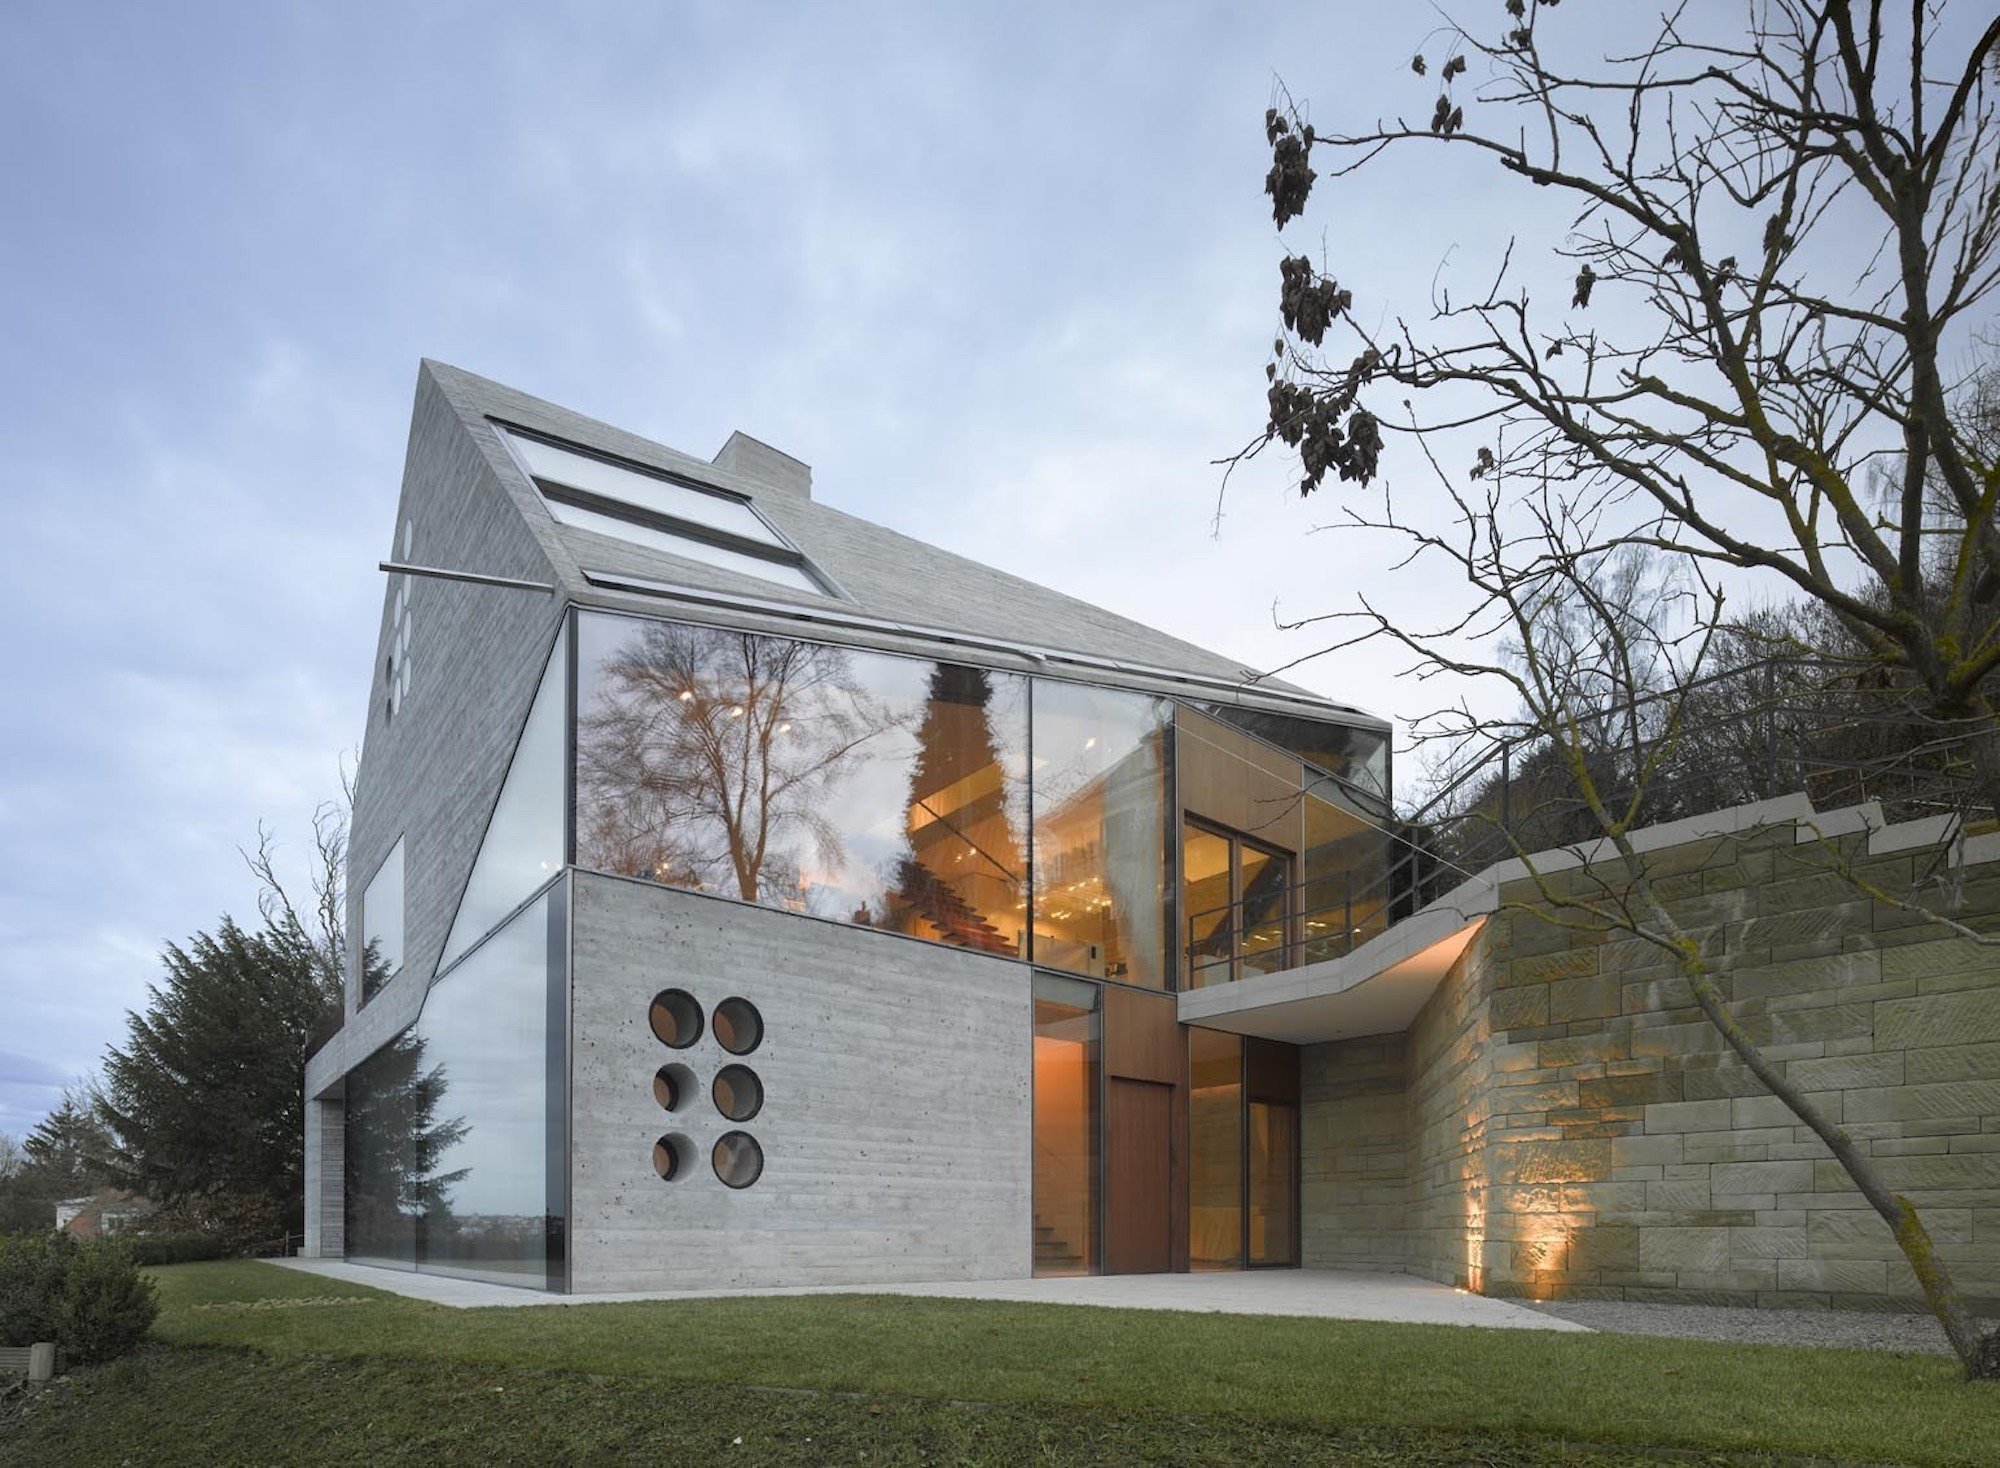 Moderní dům postavený z recyklovaných materiálů